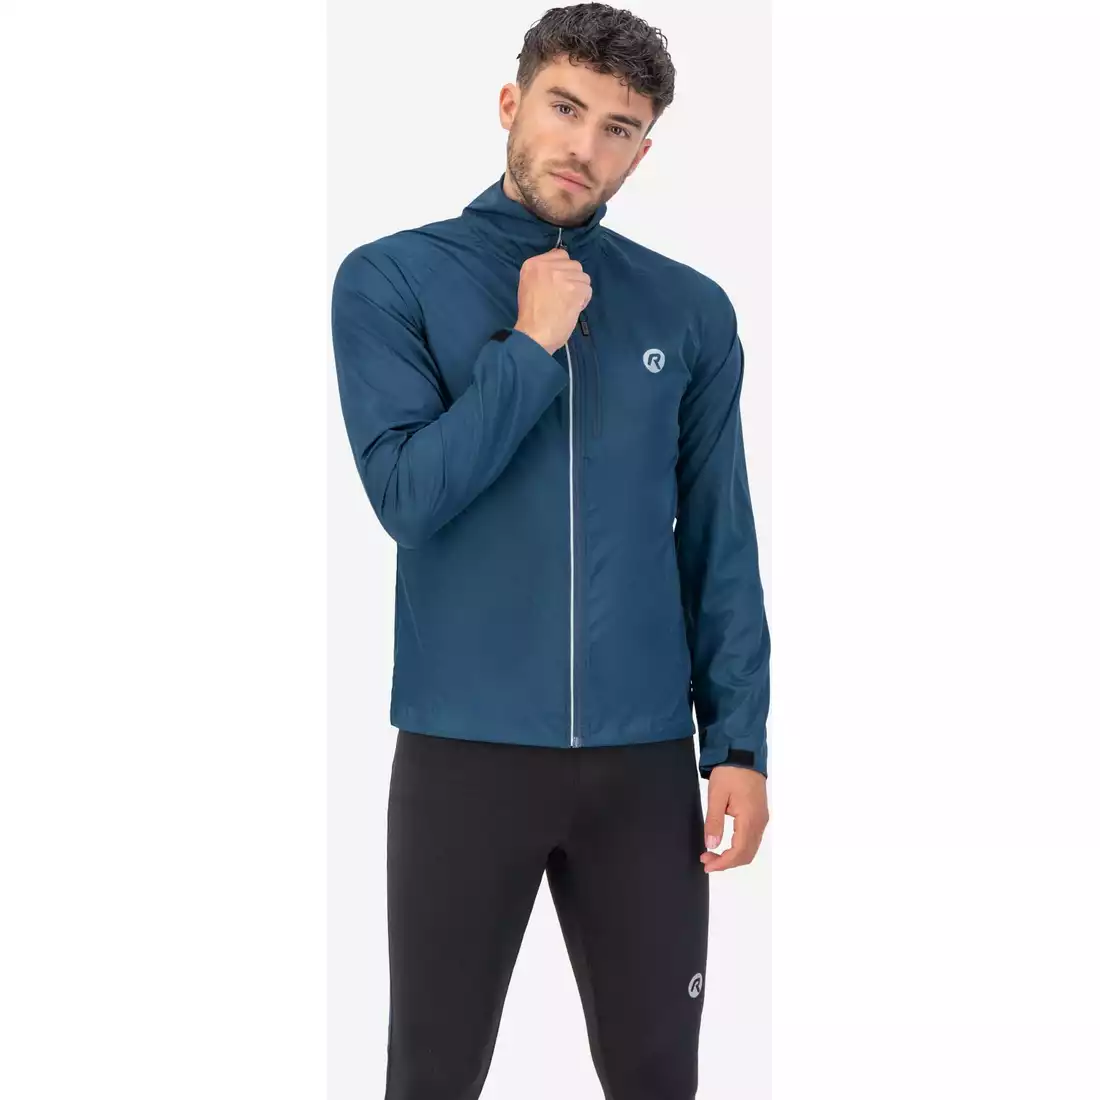 Rogelli CORE jachetă pentru bărbați, jachetă pentru alergare, albastru inchis